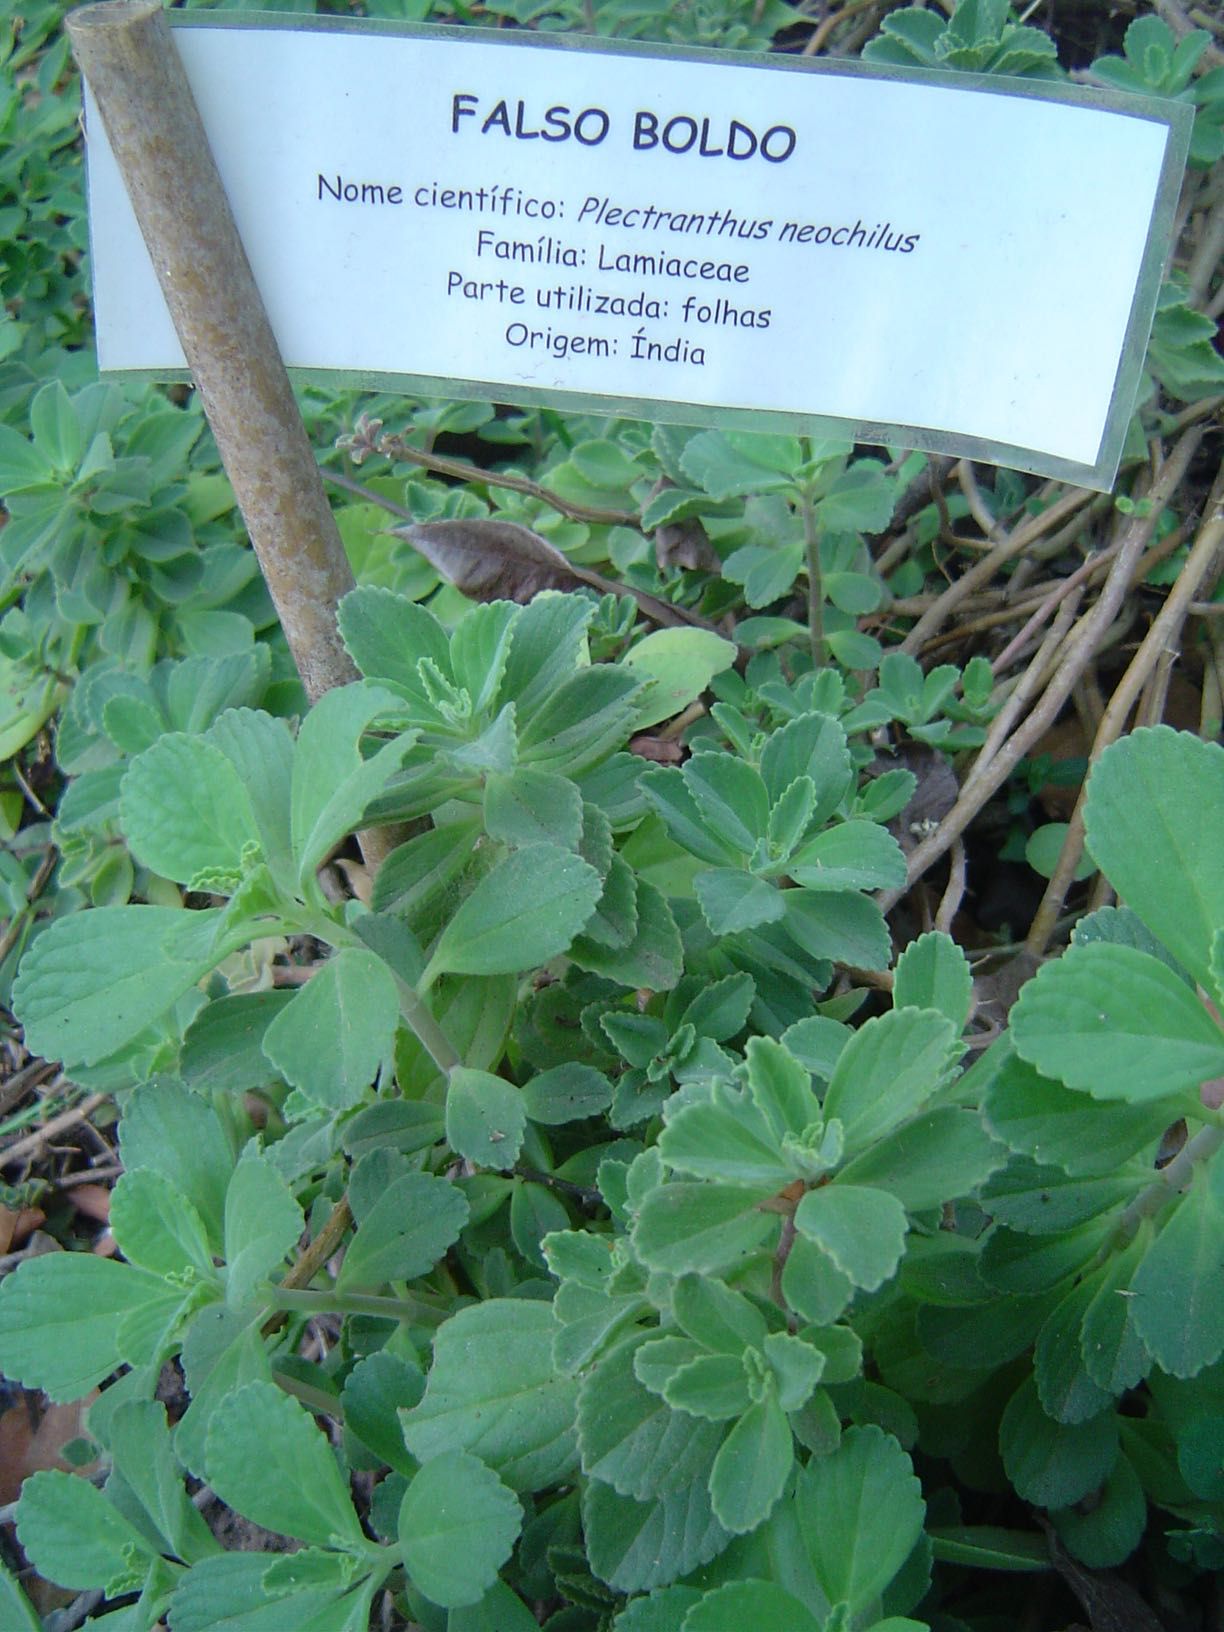 Falso-boldo (Plectranthus barbaria) produzido em modo ecológico